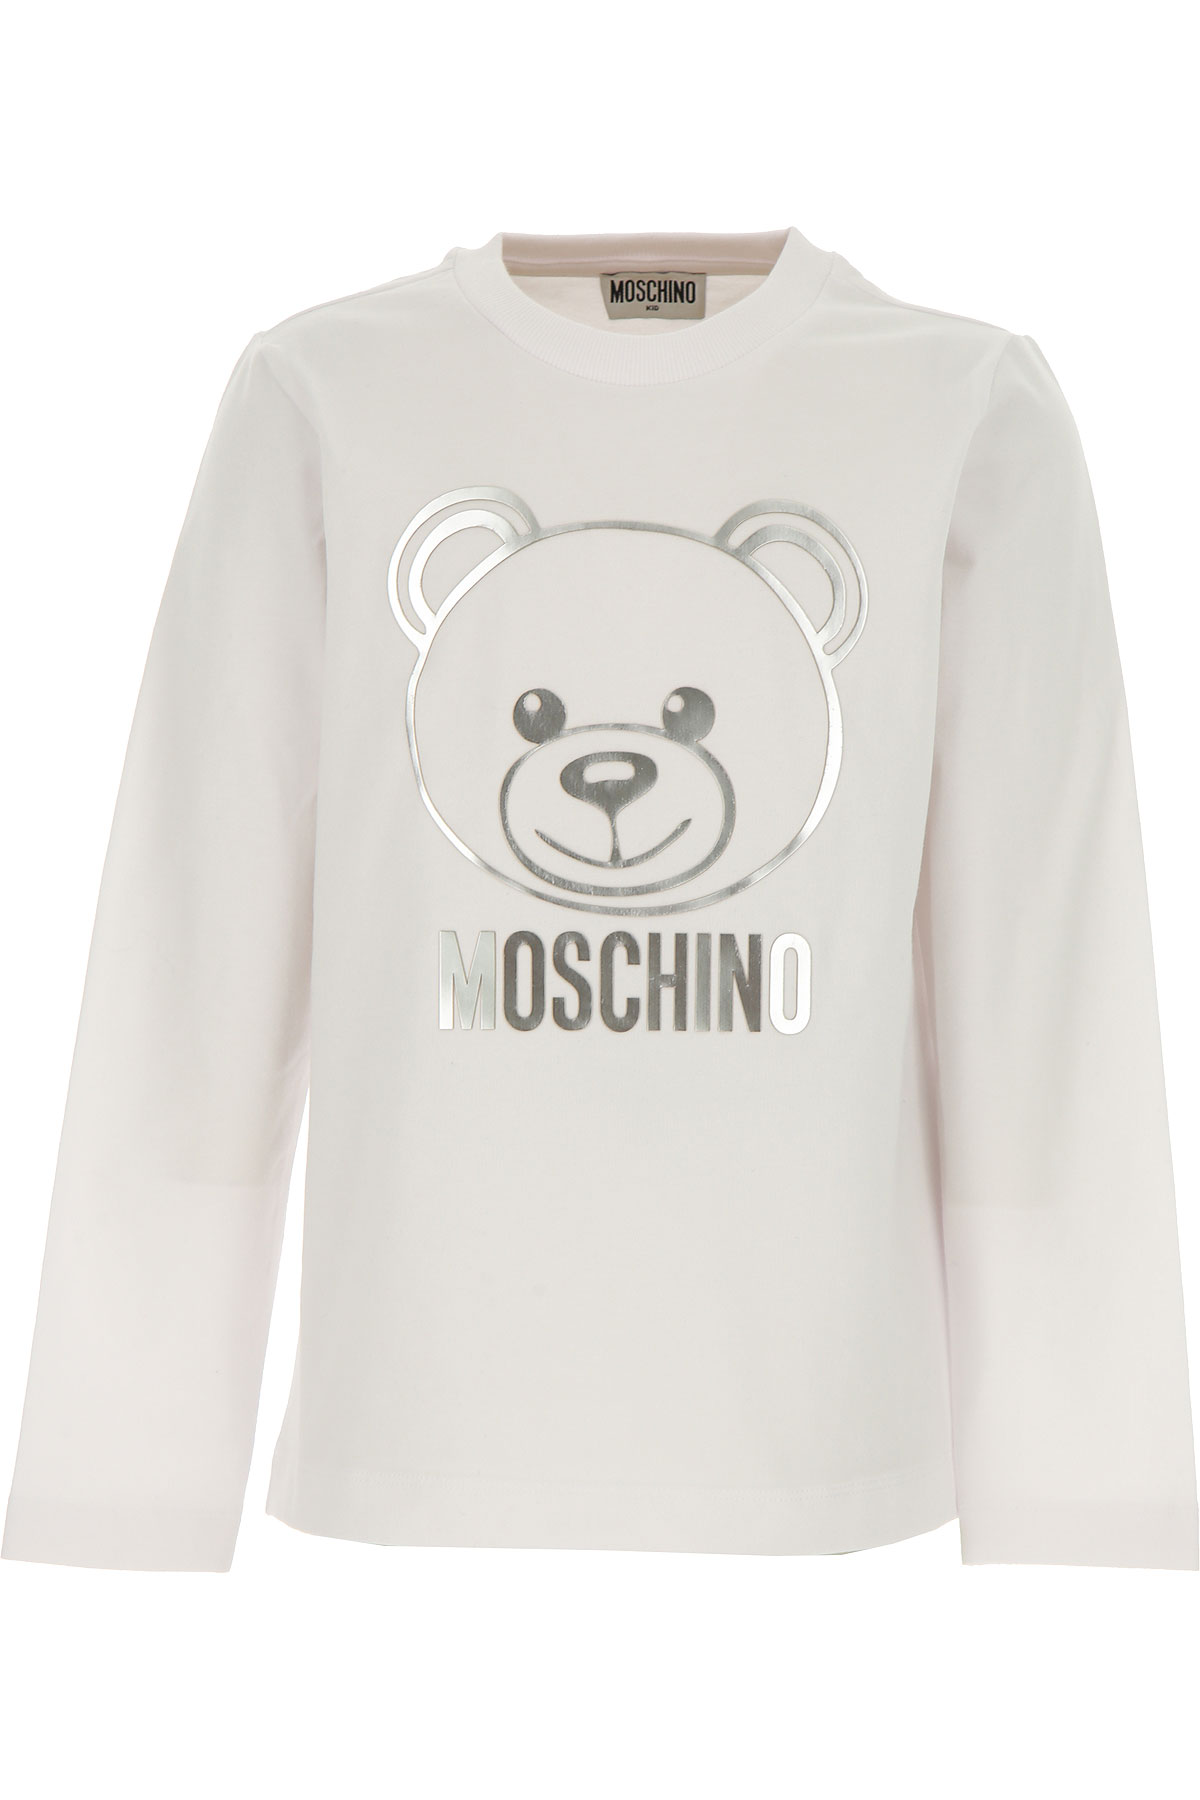 Moschino Kinder T-Shirt für Mädchen Günstig im Sale, Weiss, Baumwolle, 2017, 4Y 8Y